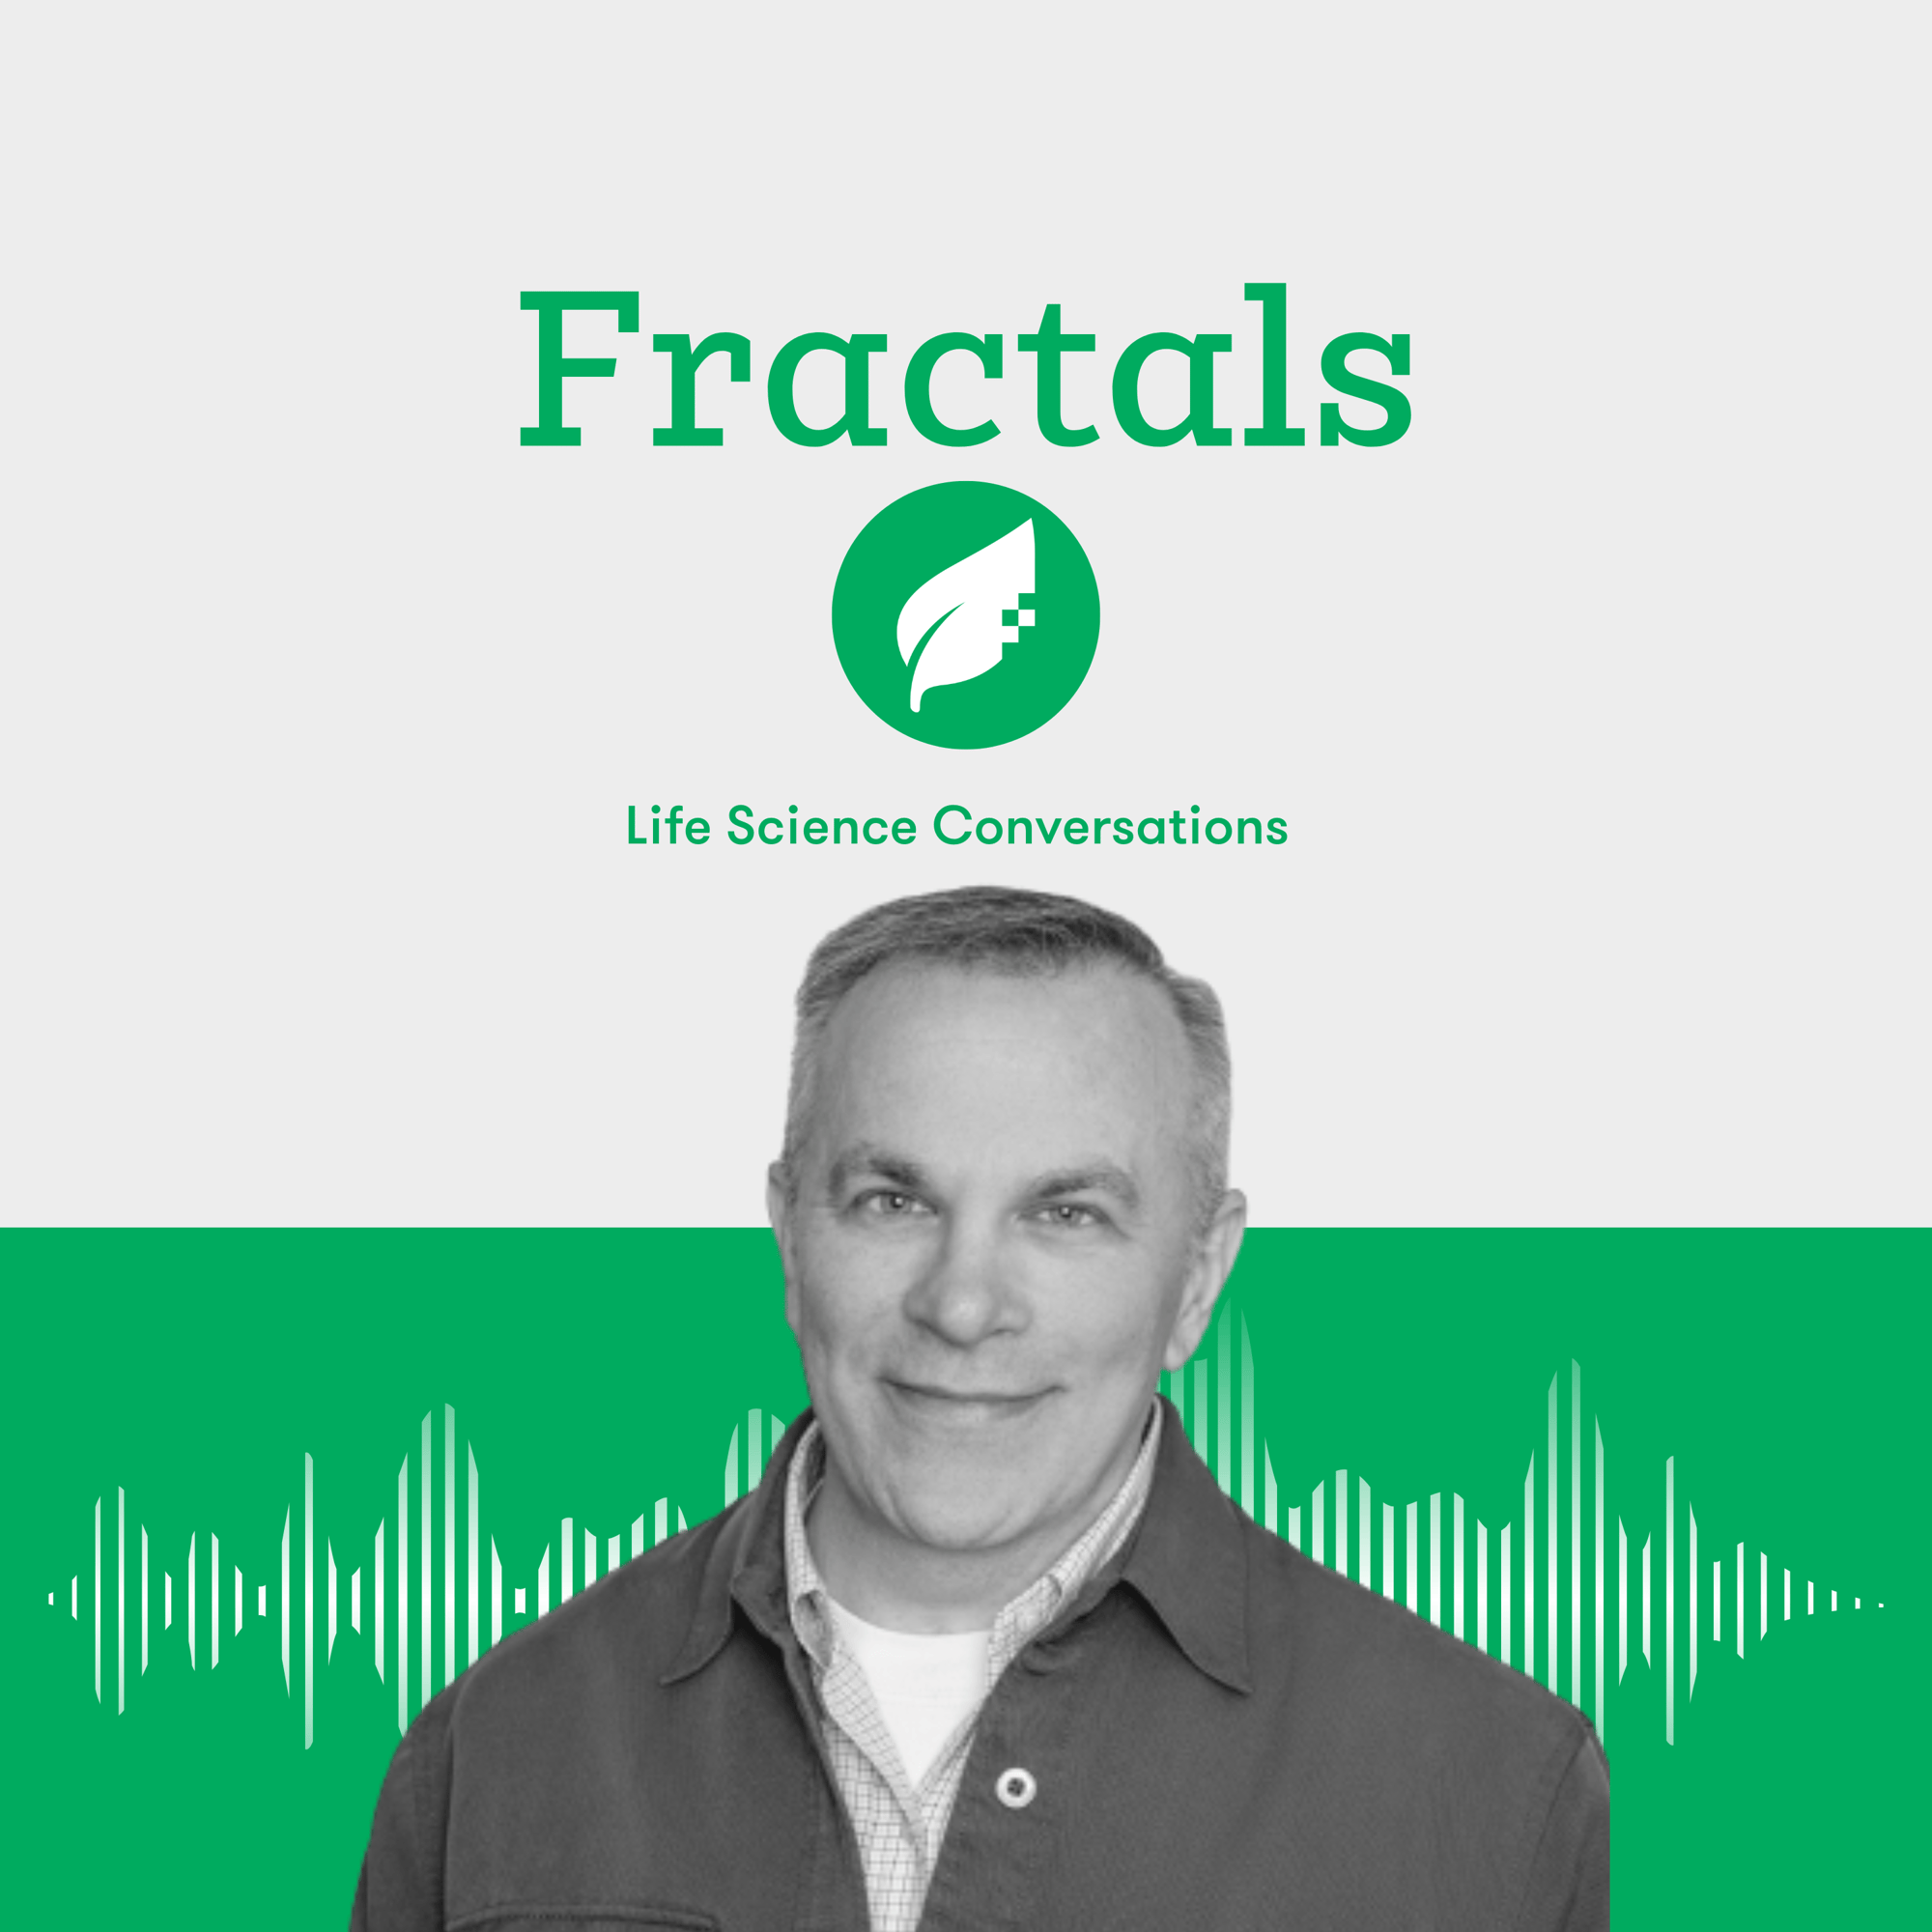 Jon Larkin: Fractals